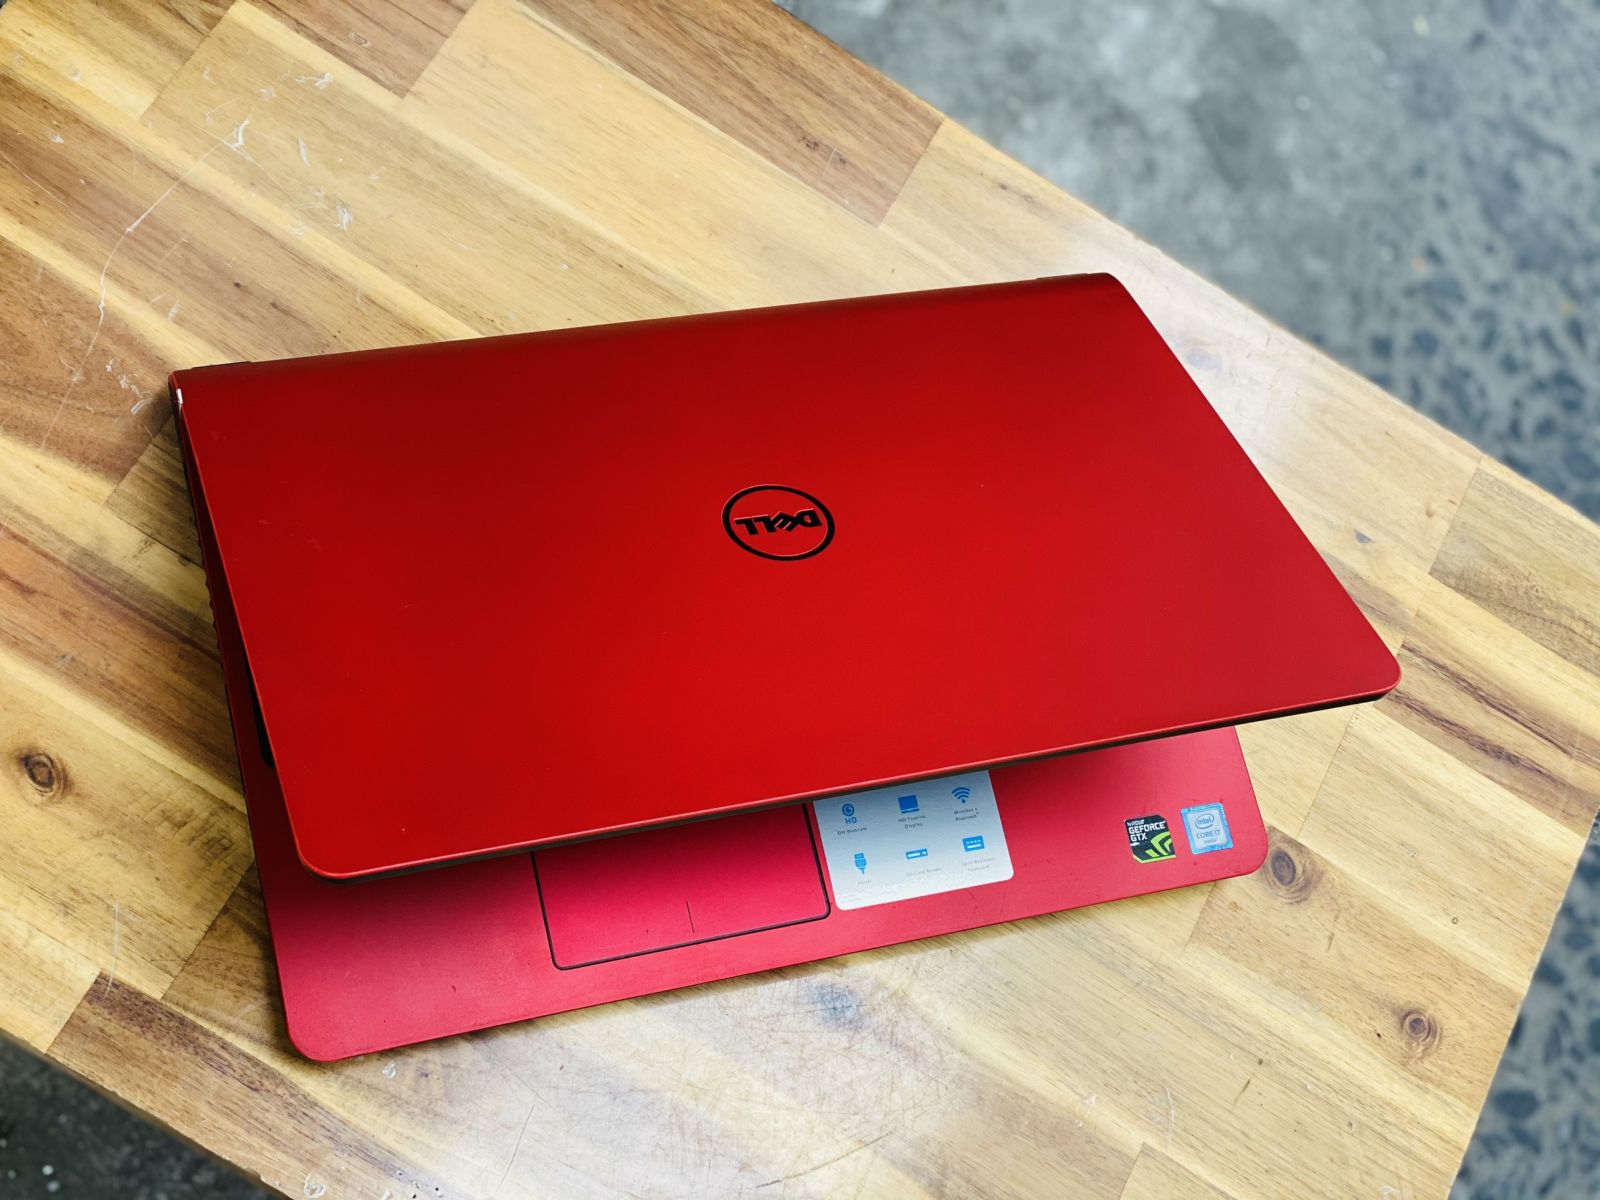 Laptop Dell Gaming 7559, i7/ 6700HQ/ 16G/ SSD128+1T/ GTX960 4G/ Full HD/ LED PHÍM/ Màu Đỏ phiên bản giới hạn5